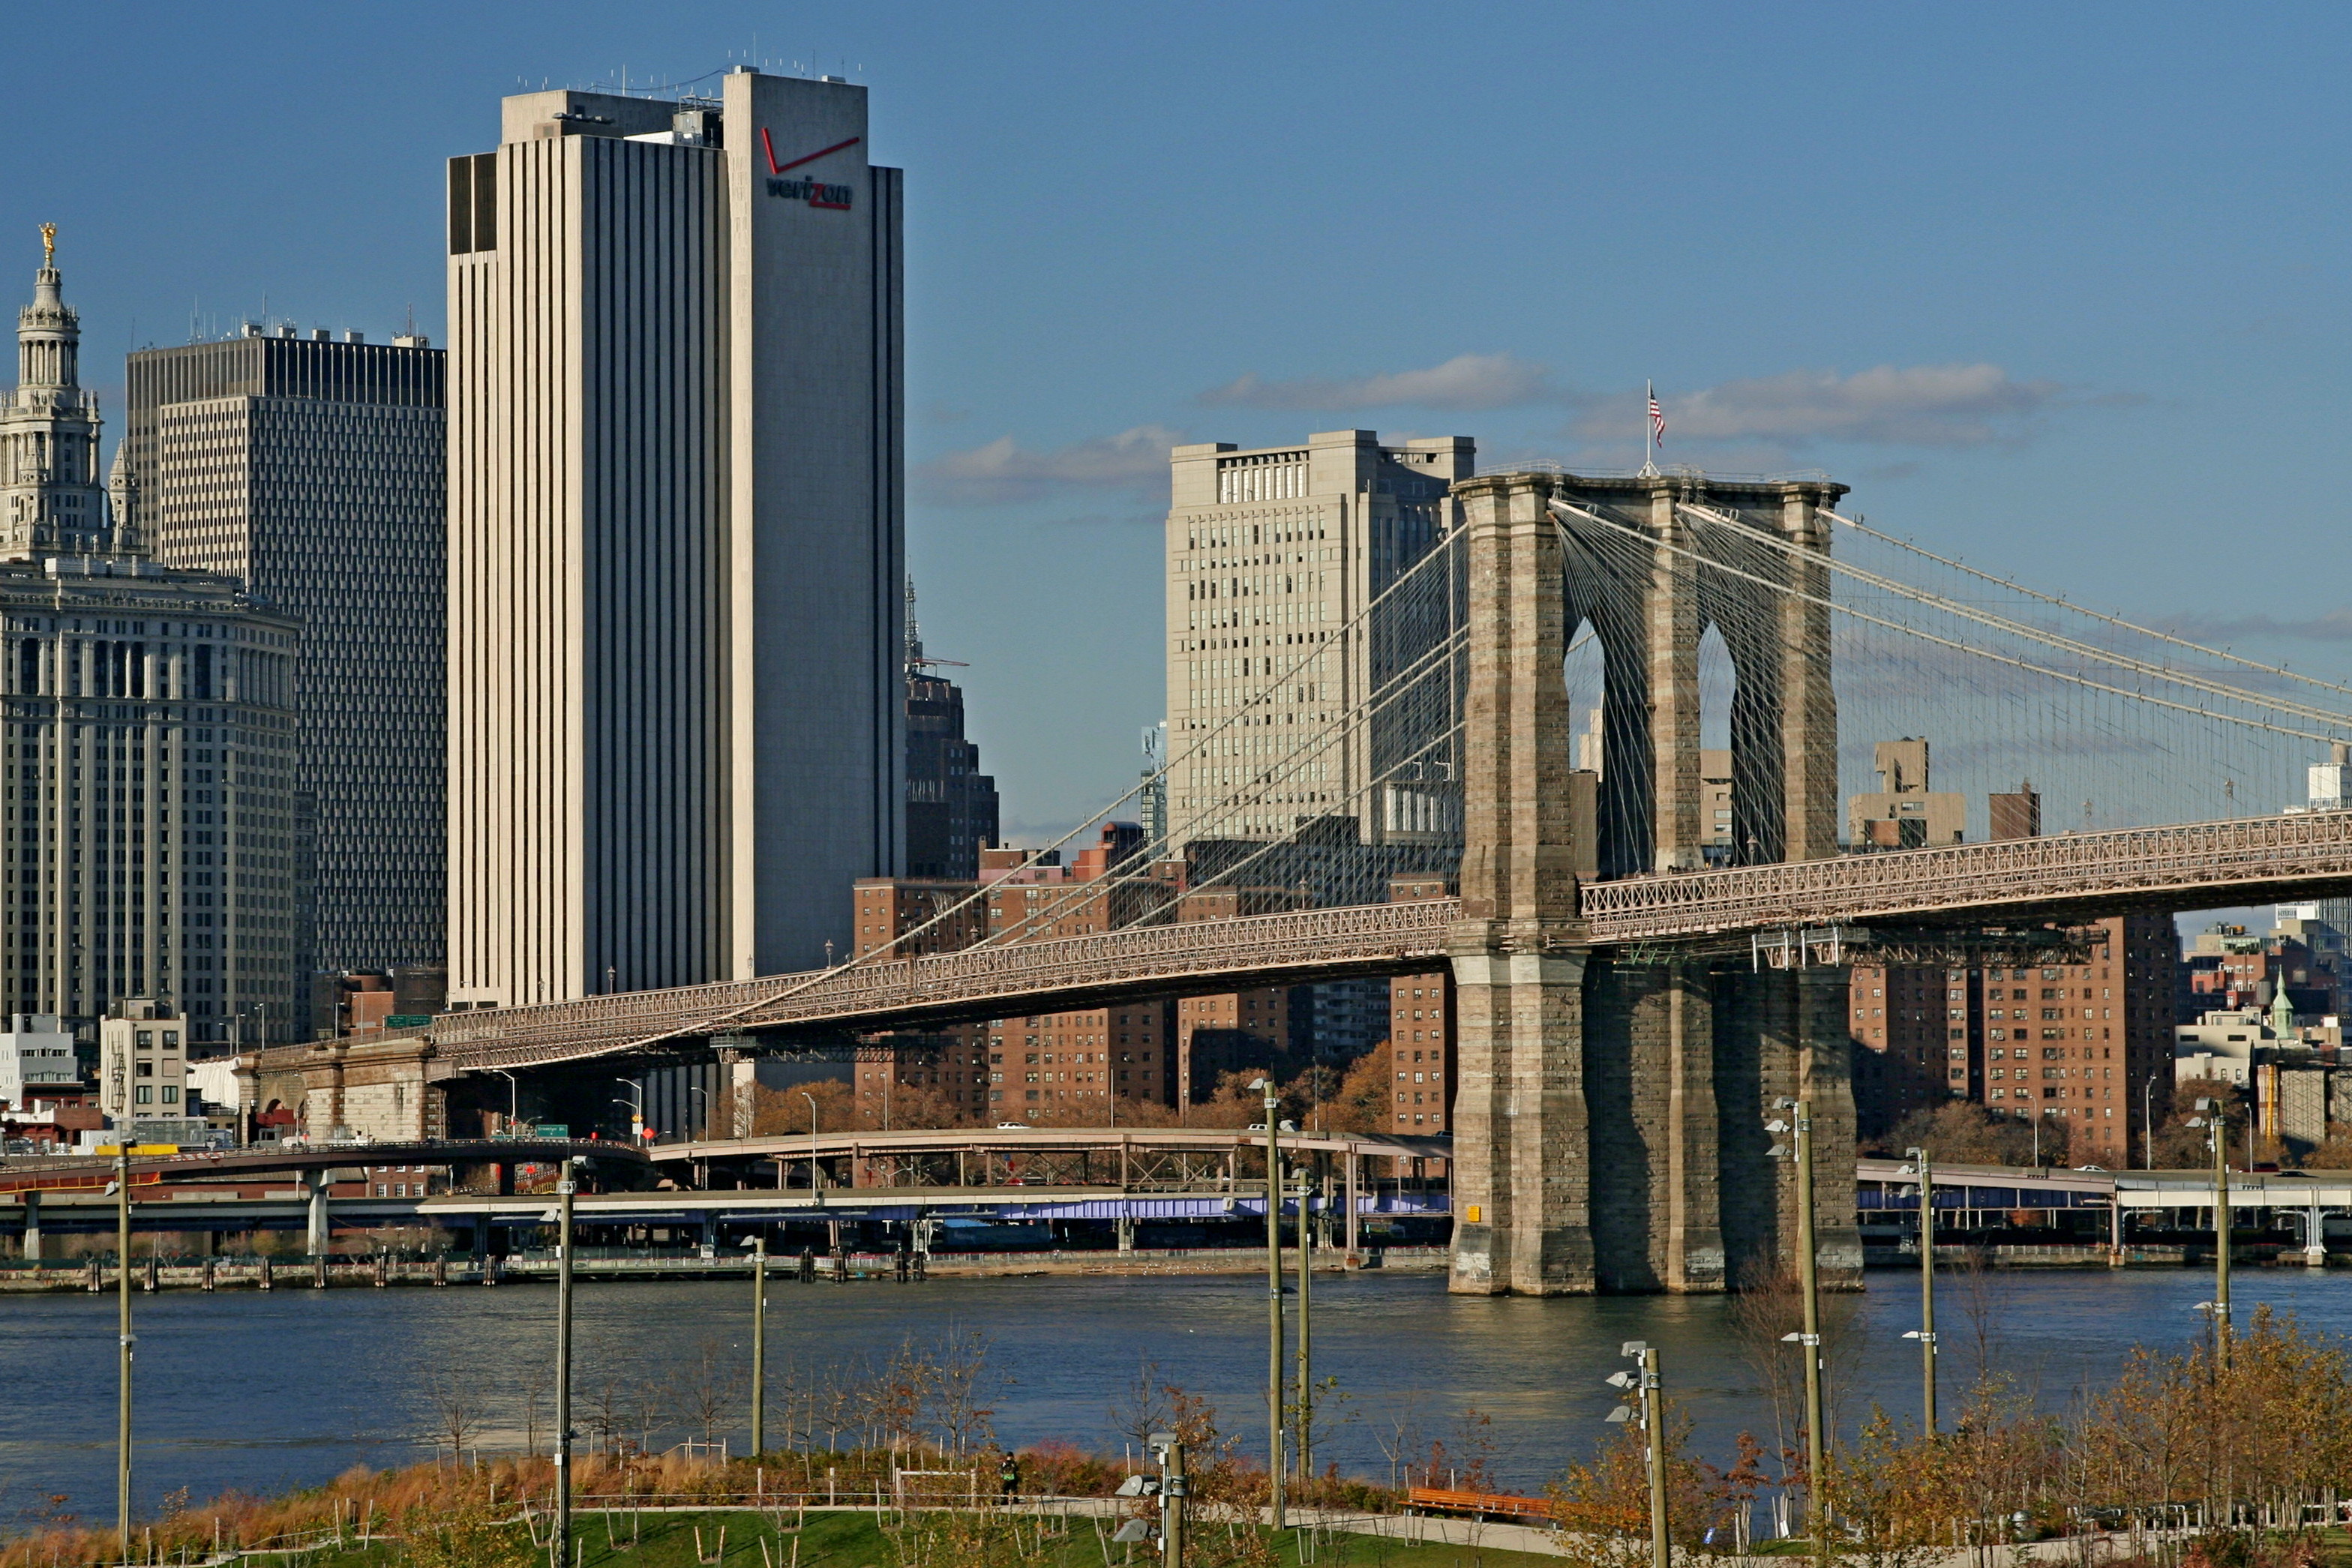 Nowy Jork, most brooklynski, fot. T. Liptak